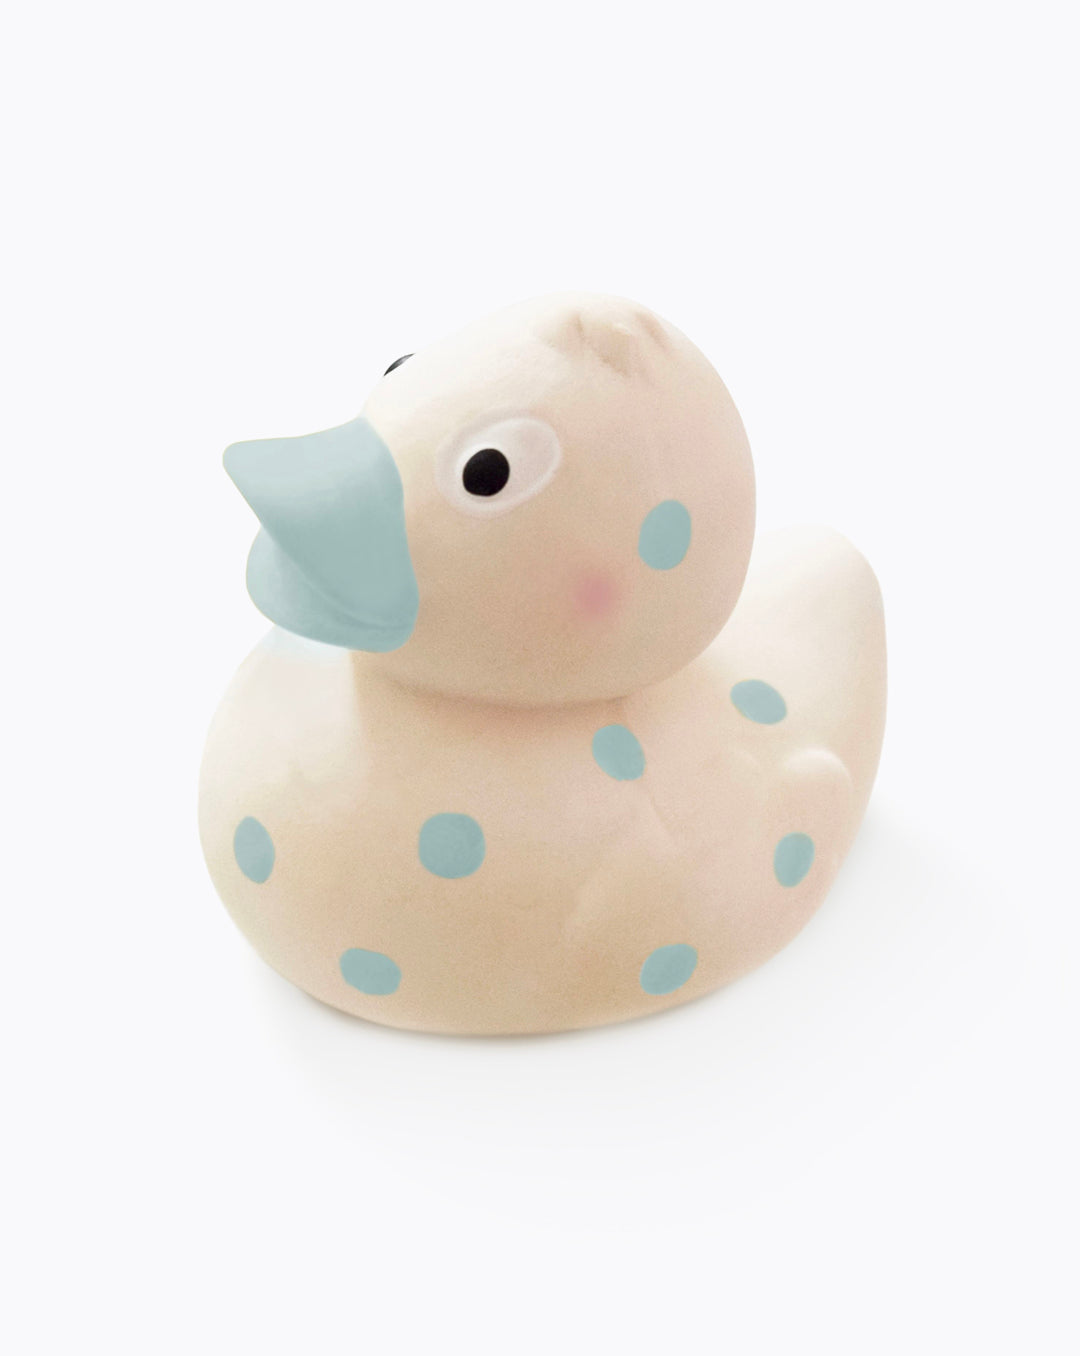 Cuddleduck | baby bath toy & teether | blue